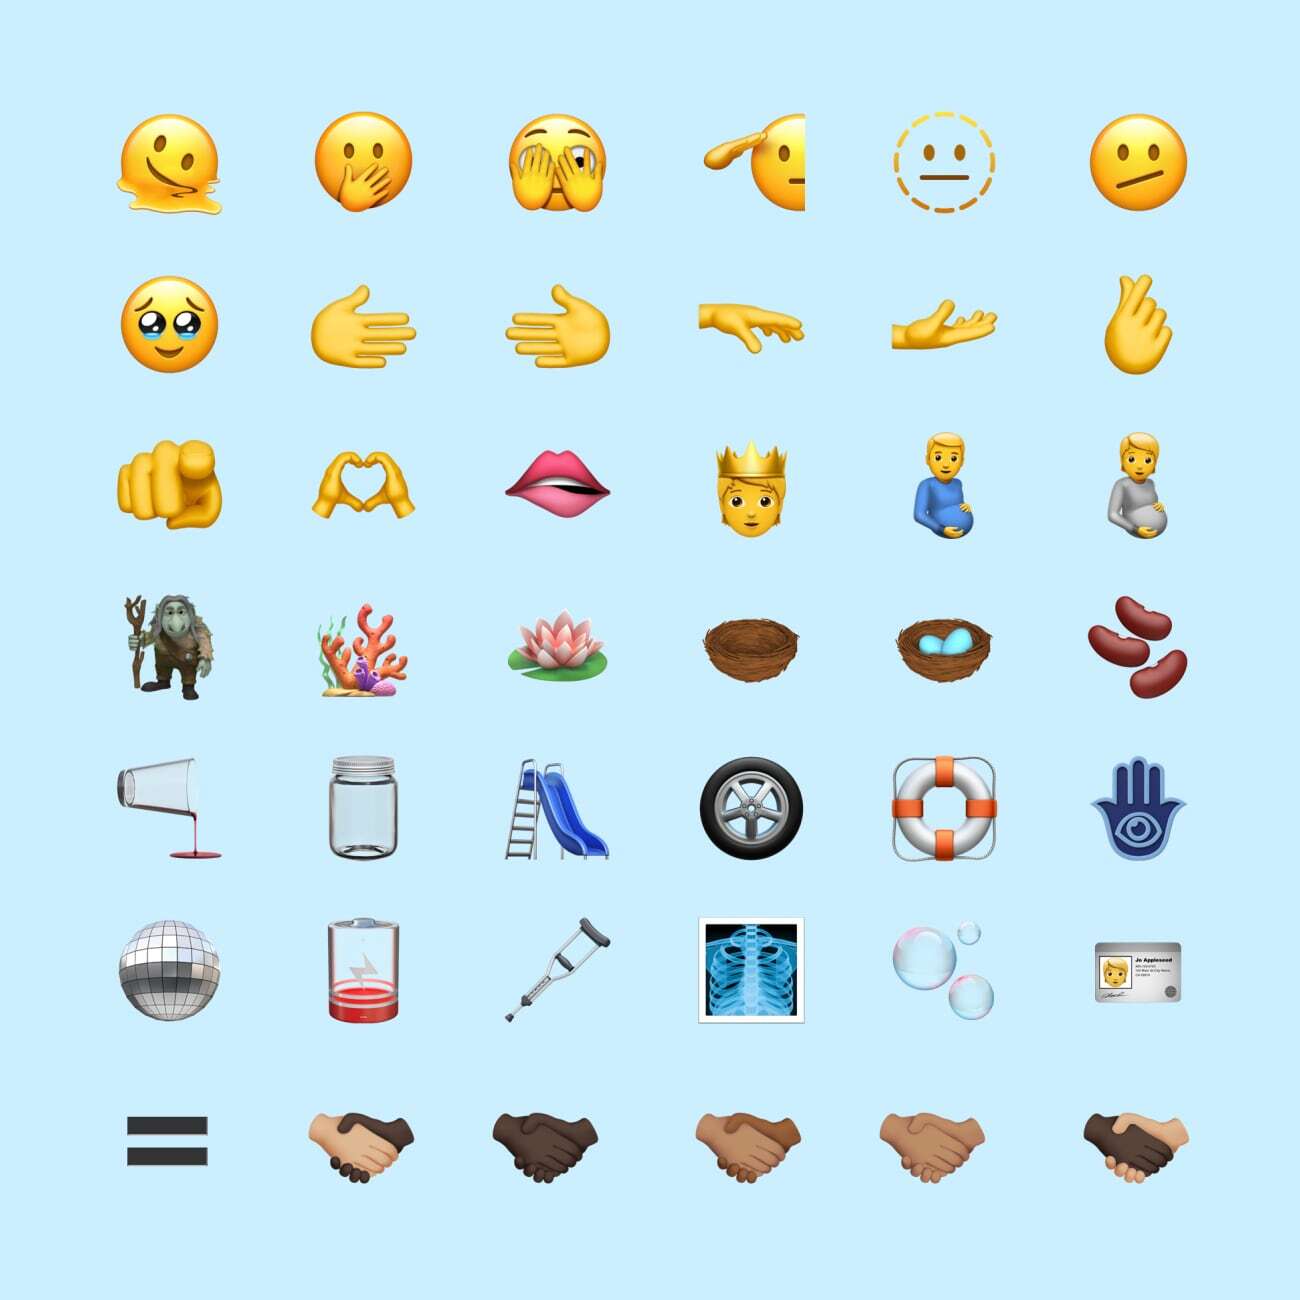 Nuevos emojis de iOS 15.4